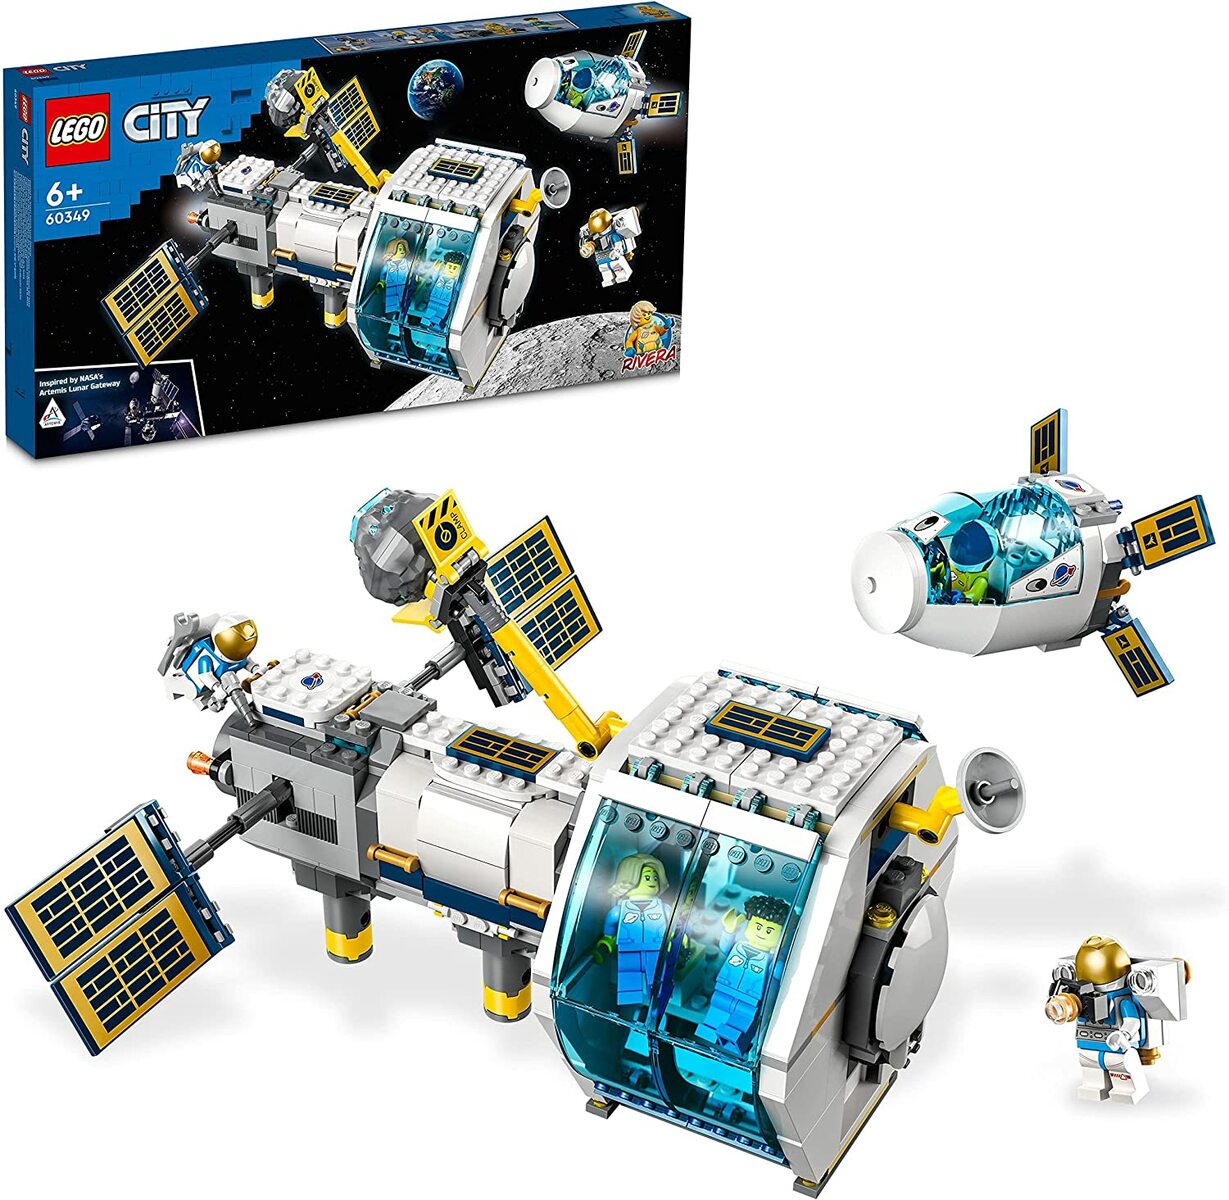 レゴ シティ 月面ステーション 60349 6才以上 LEGO CITY ブロック おもちゃ 知育玩具 レゴブロック レゴジャパン 男の子 女の子 宇宙 宇宙ステーション 月 NASA 宇宙飛行士 プレゼント ギフト